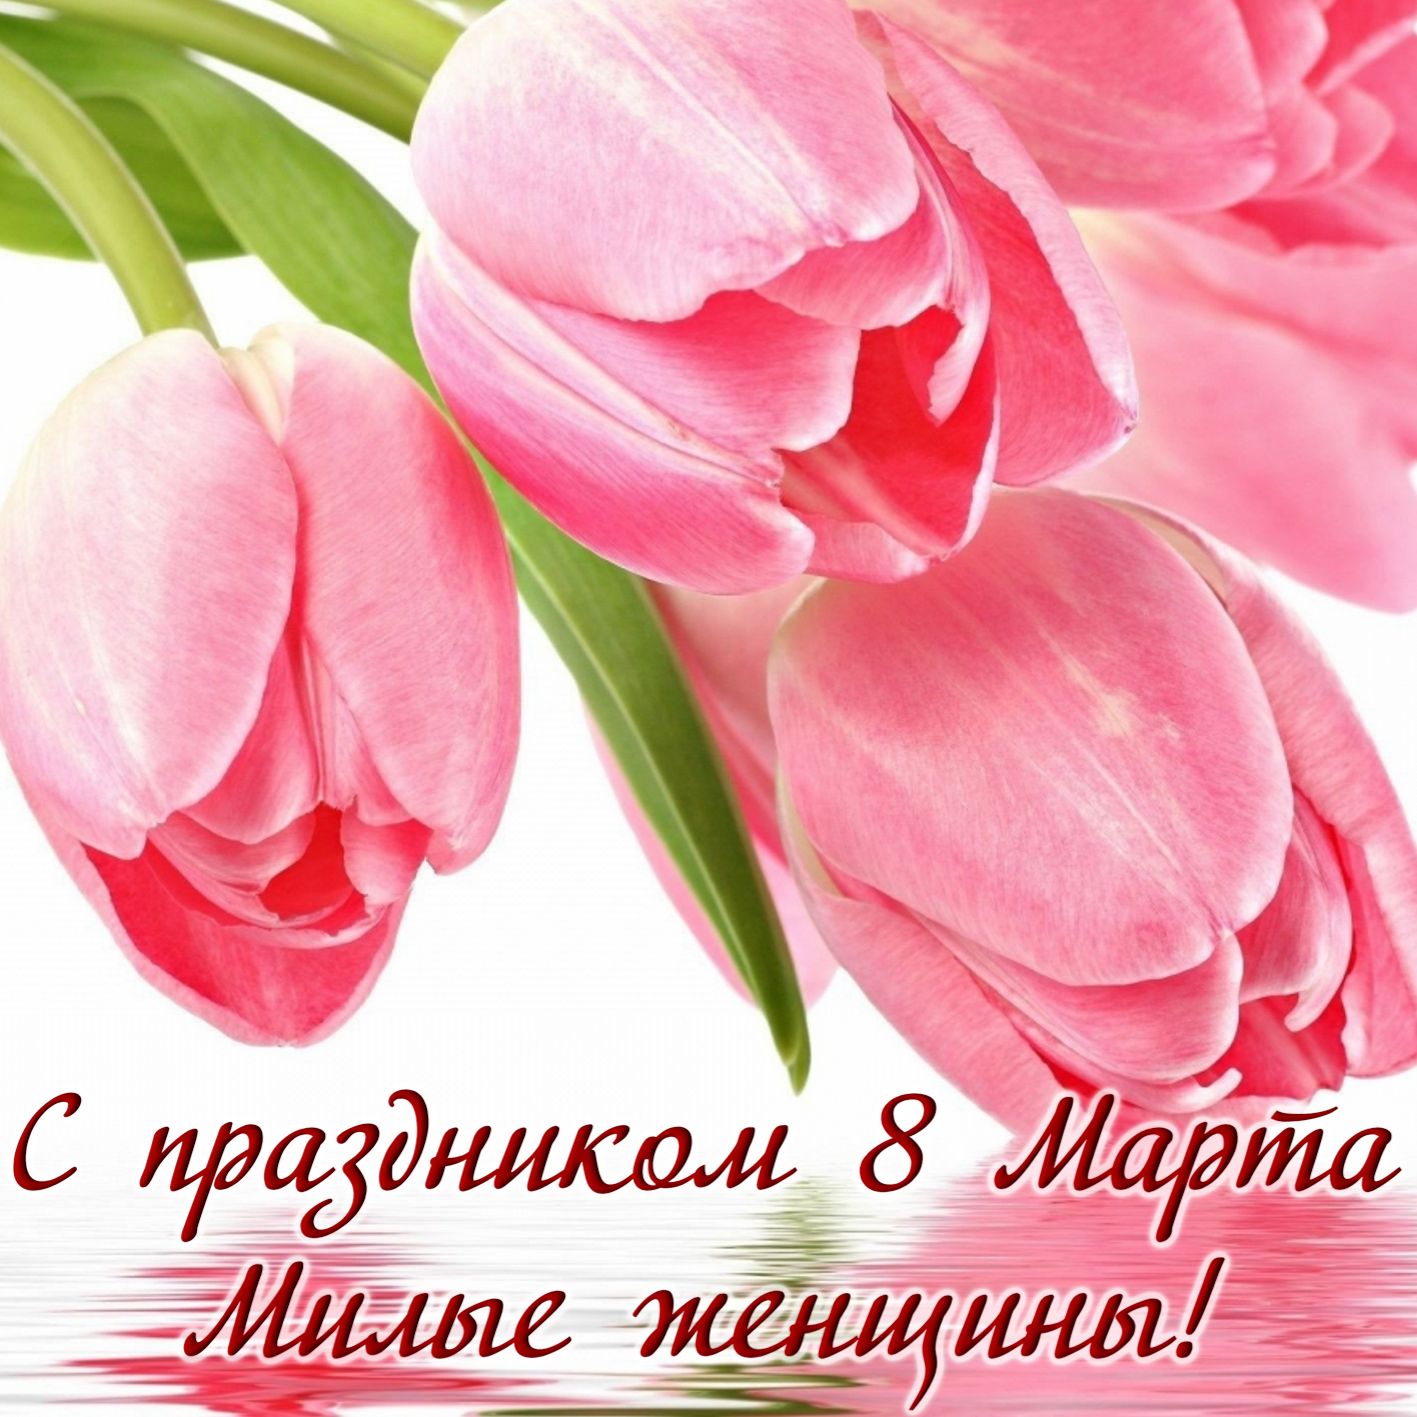 Открытка с 8 марта - розовые тюльпаны для милых женщин